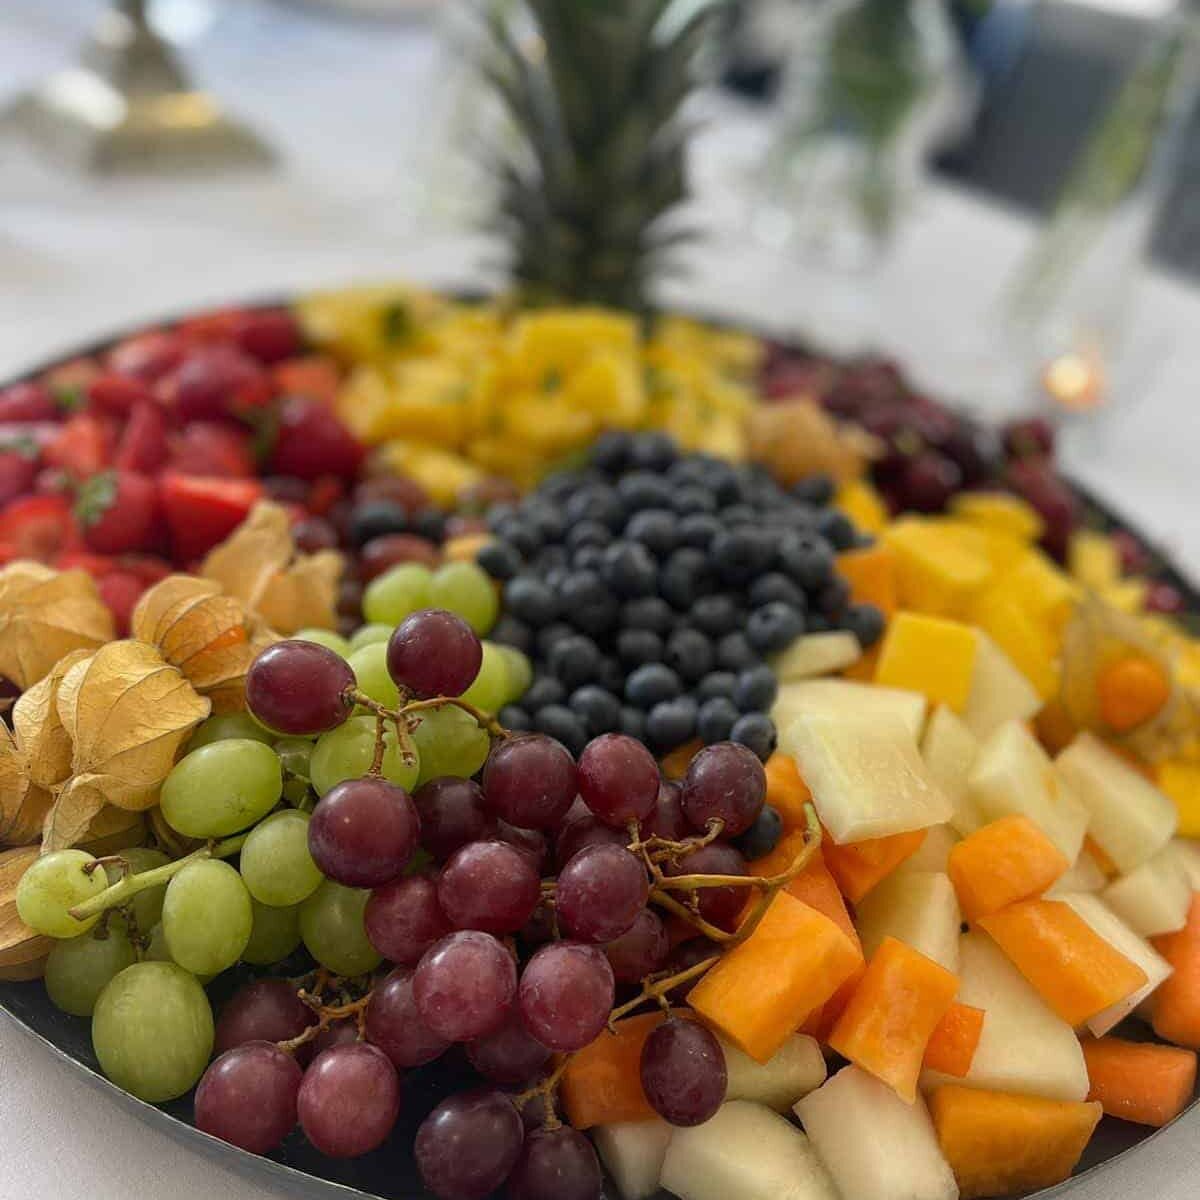 A photo of a fruit platter